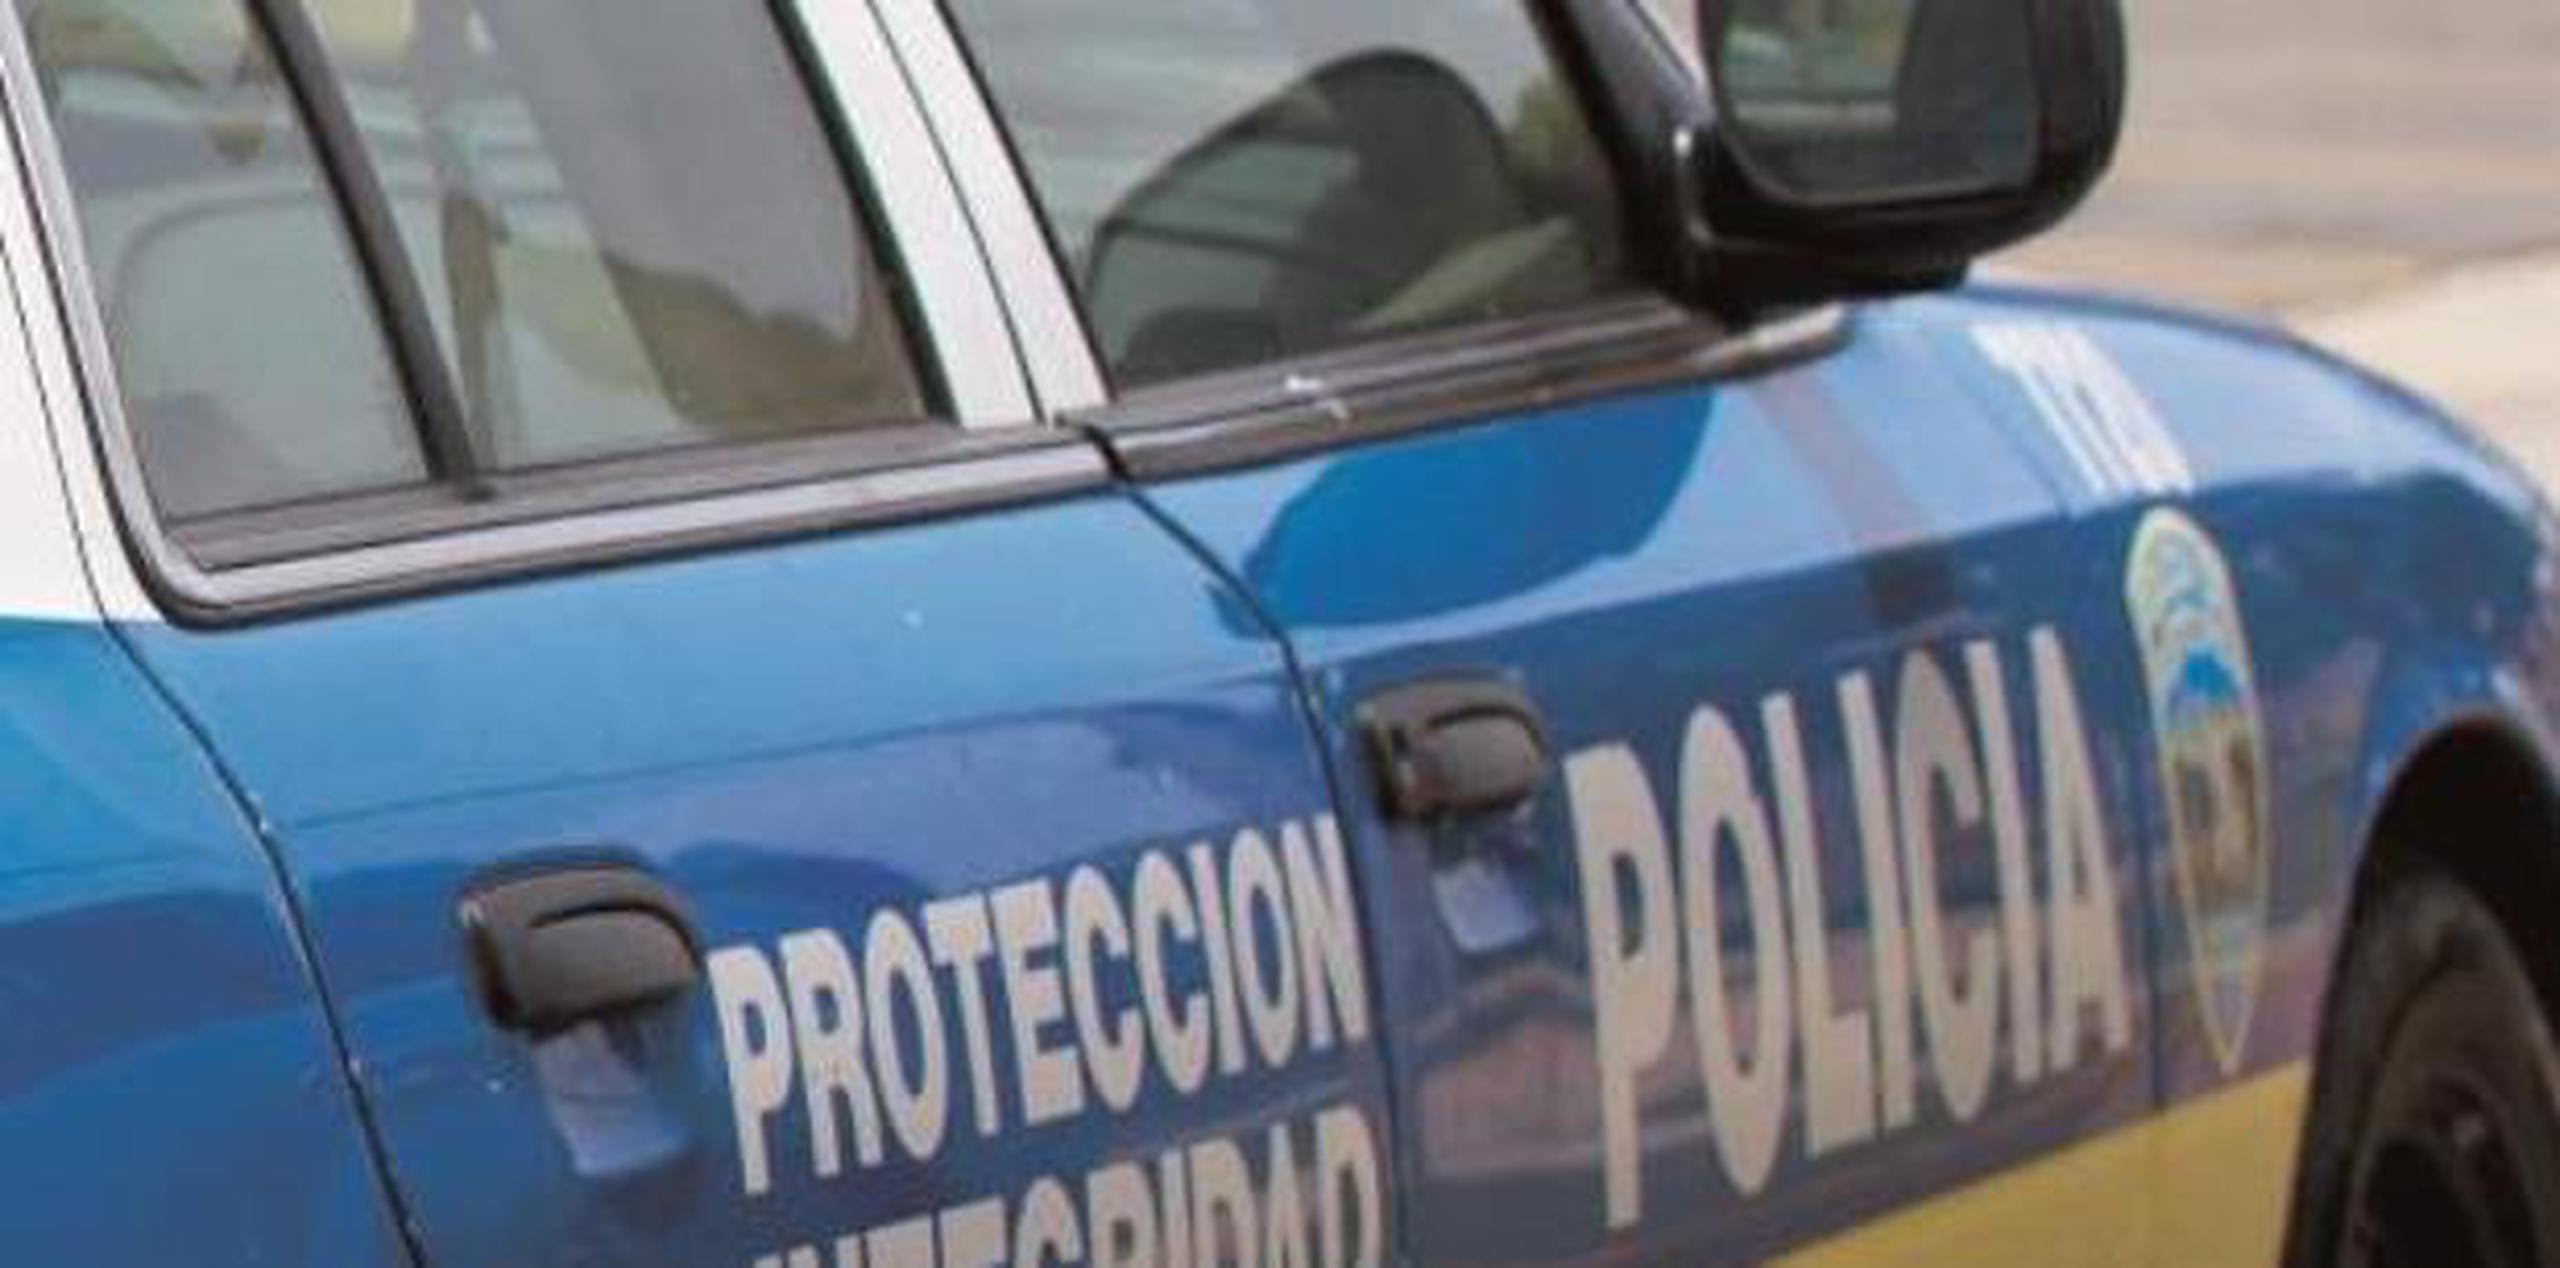 El caso fue referido a la División de Vehículos Hurtados del área de Arecibo. (archivo)